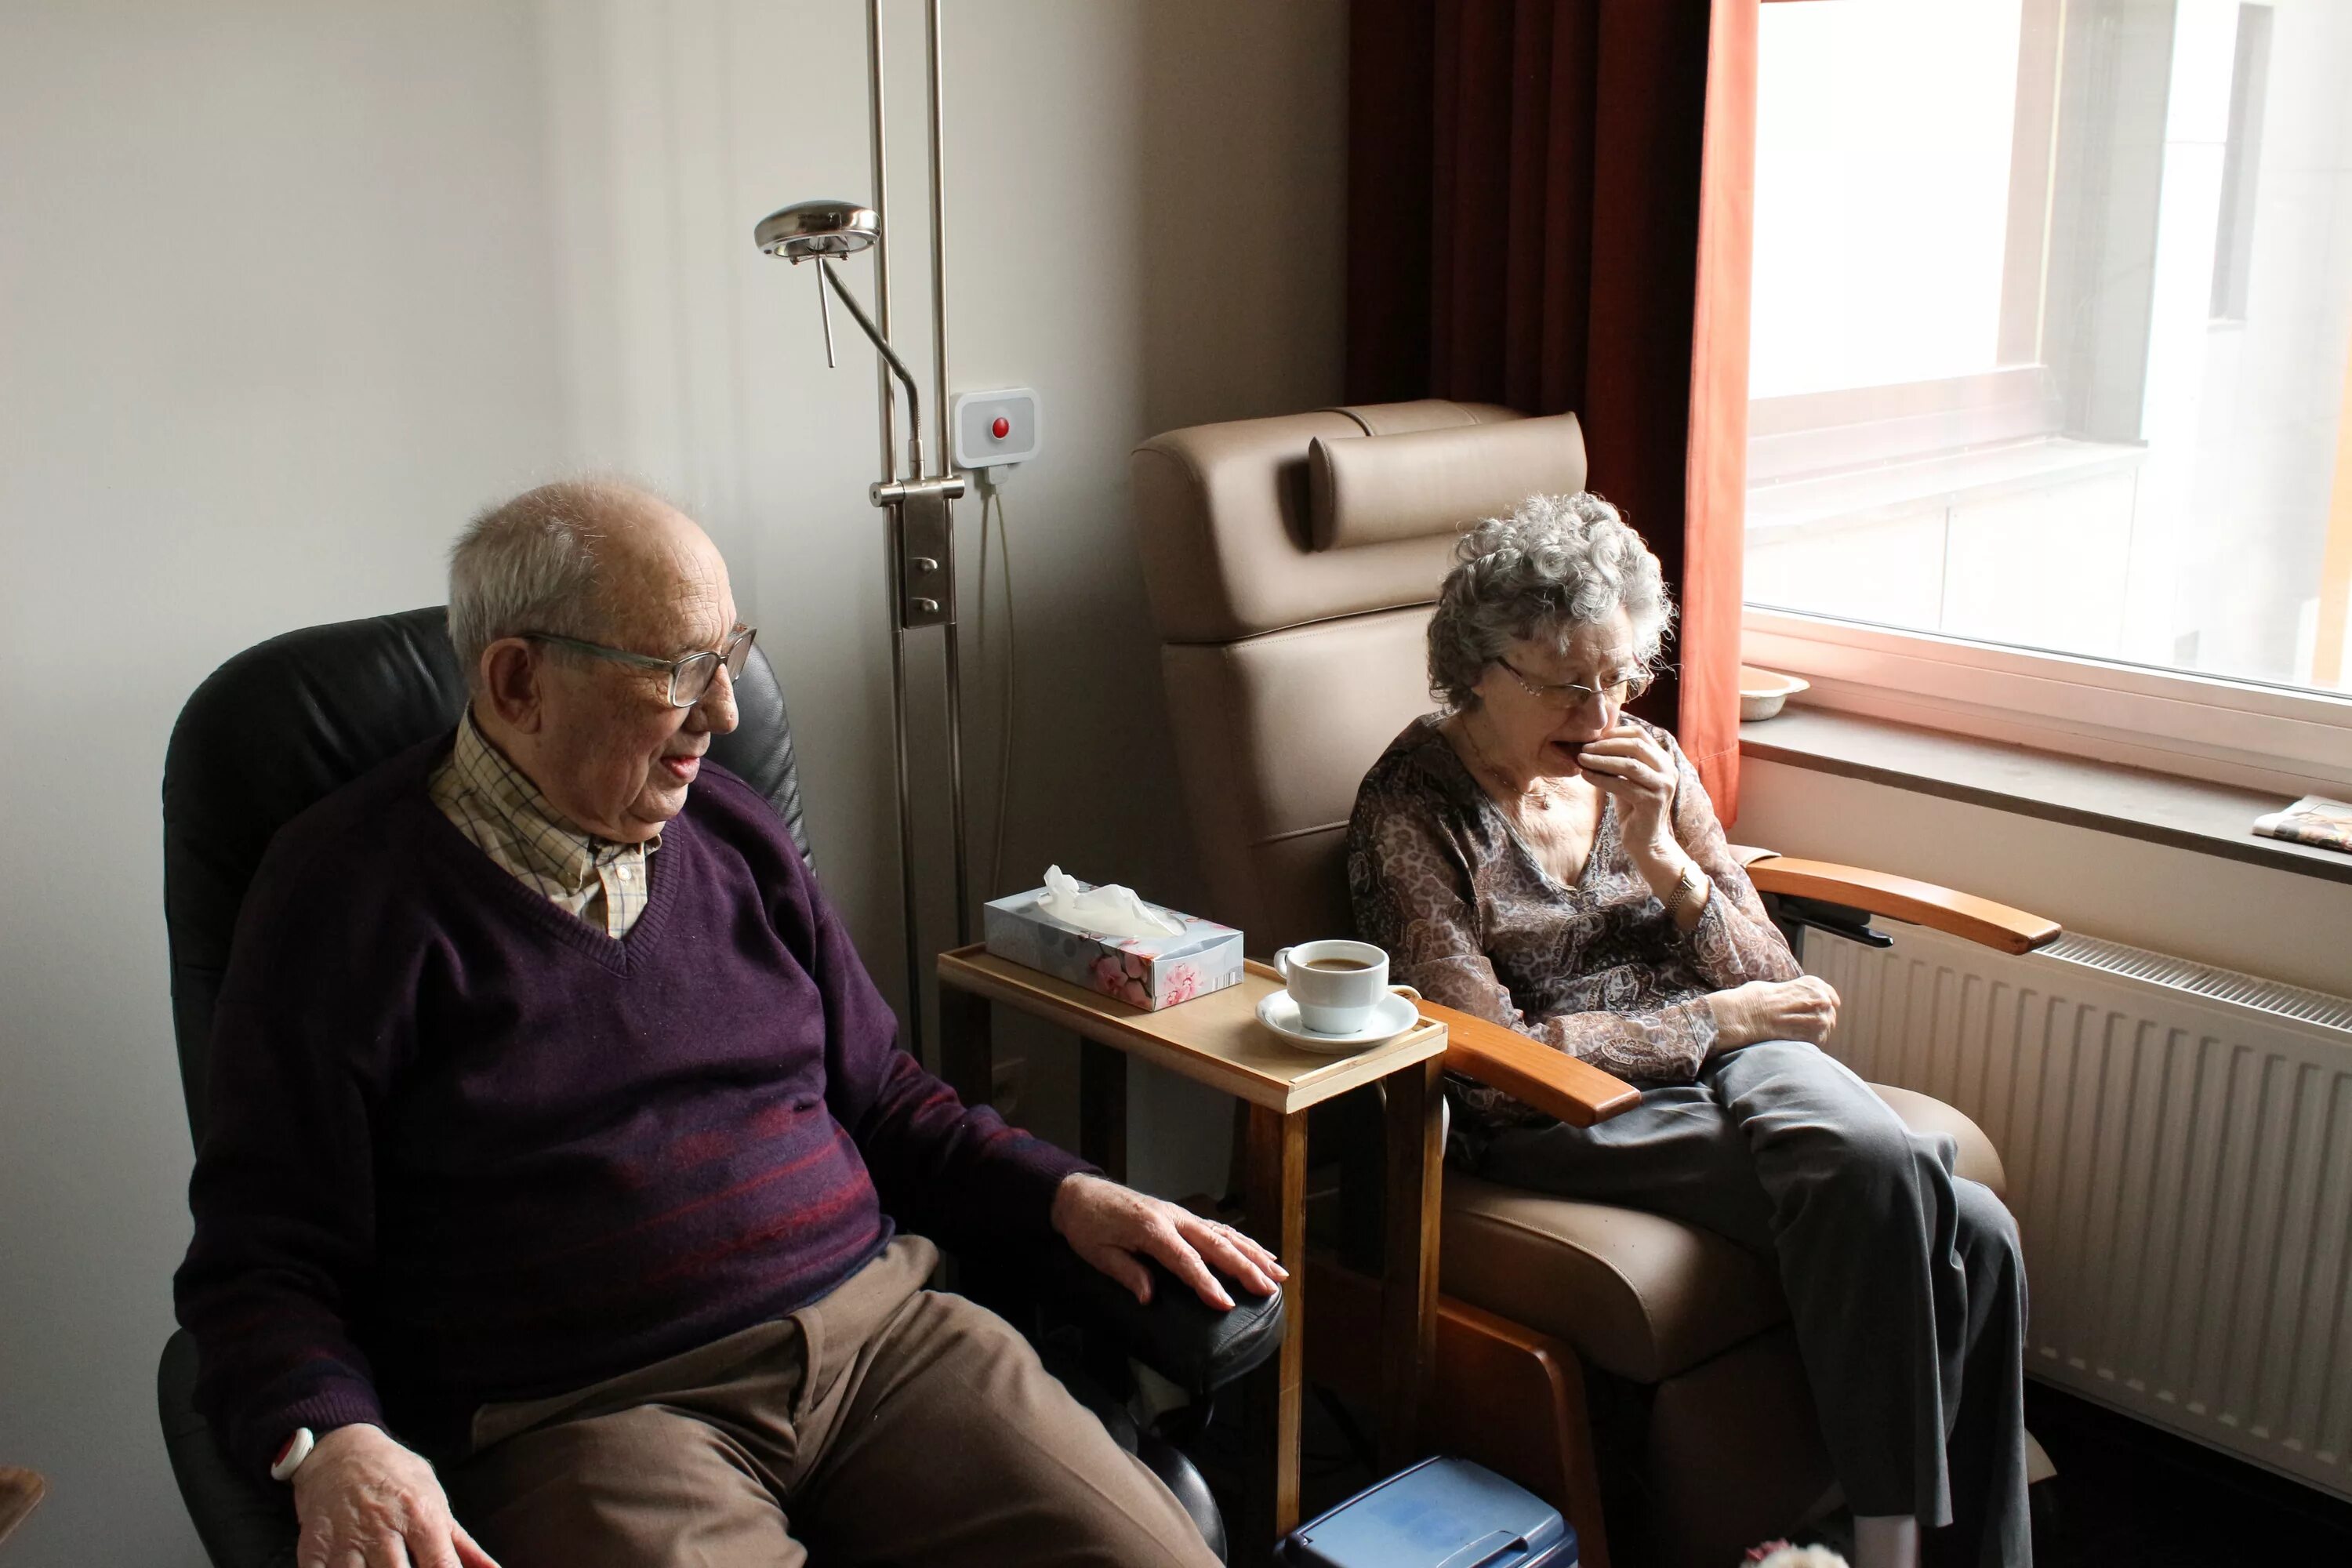 Дом престарелых. Пенсионеры в доме престарелых. Дом престарелых в Швеции. Пожилые в интернете. Жизнь пенсионеров на пенсии